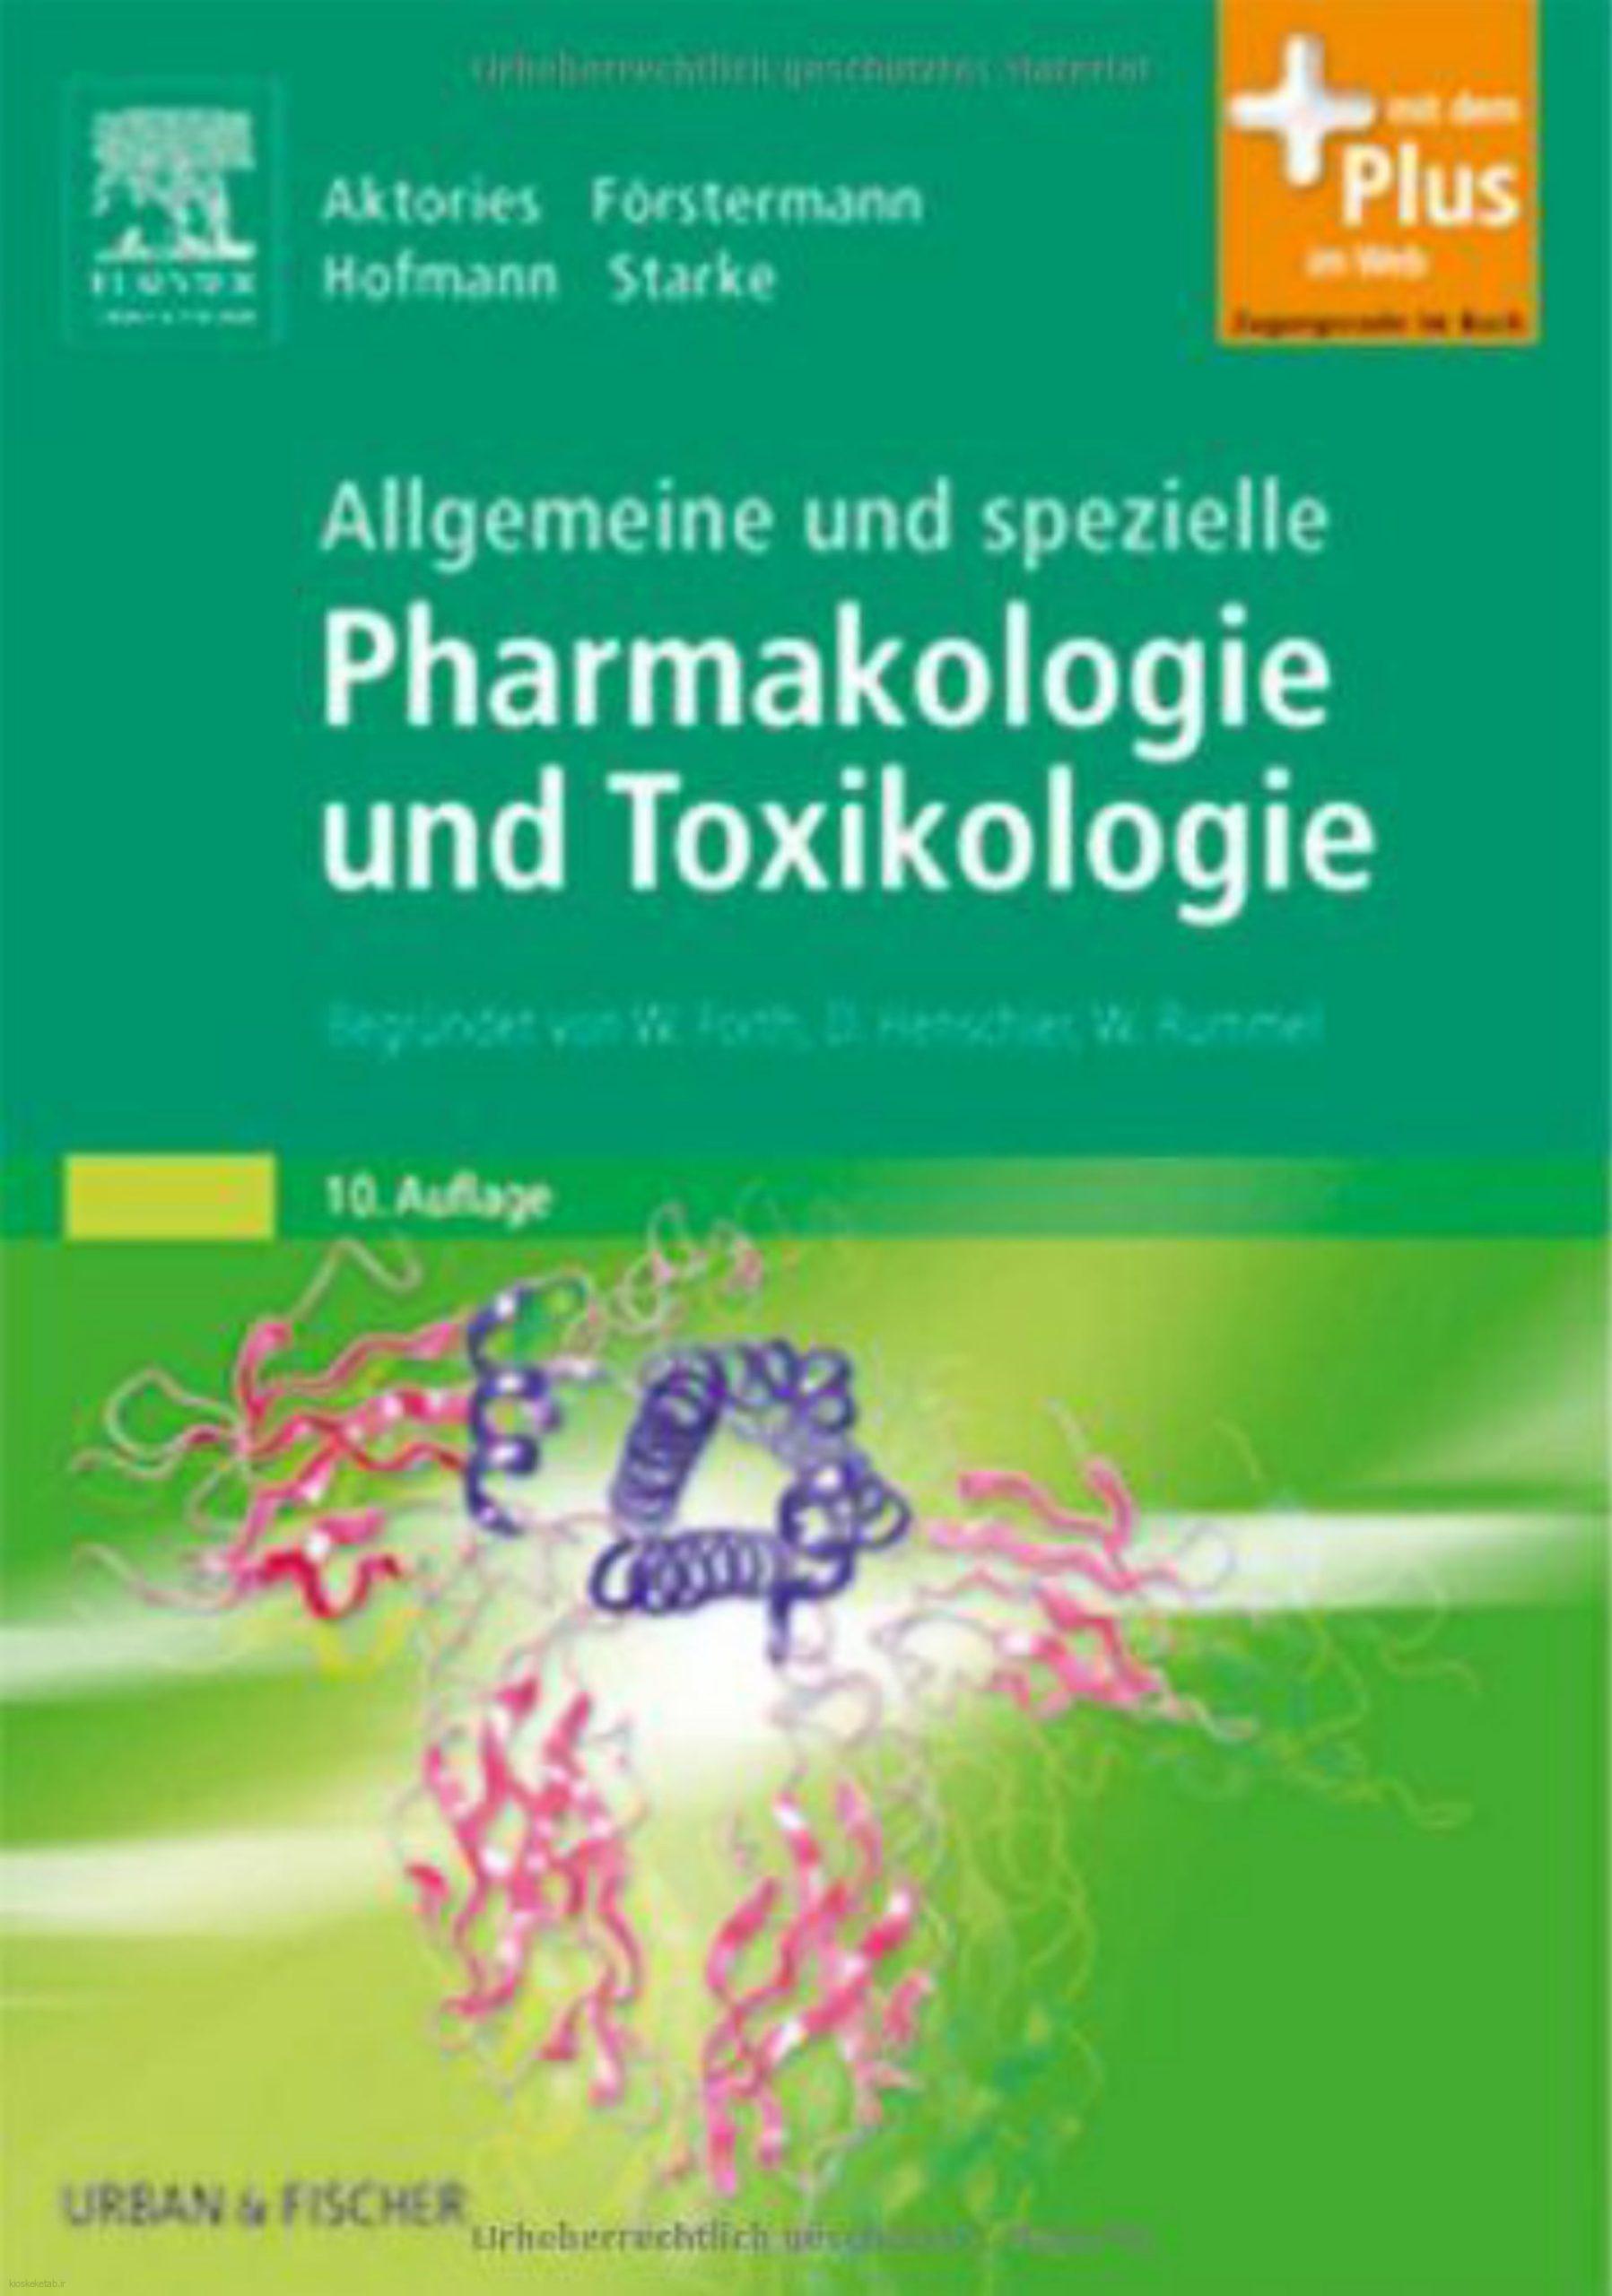 دانلود کتاب آلمانیallgemeine und spezielle pharmakologie und toxikologie